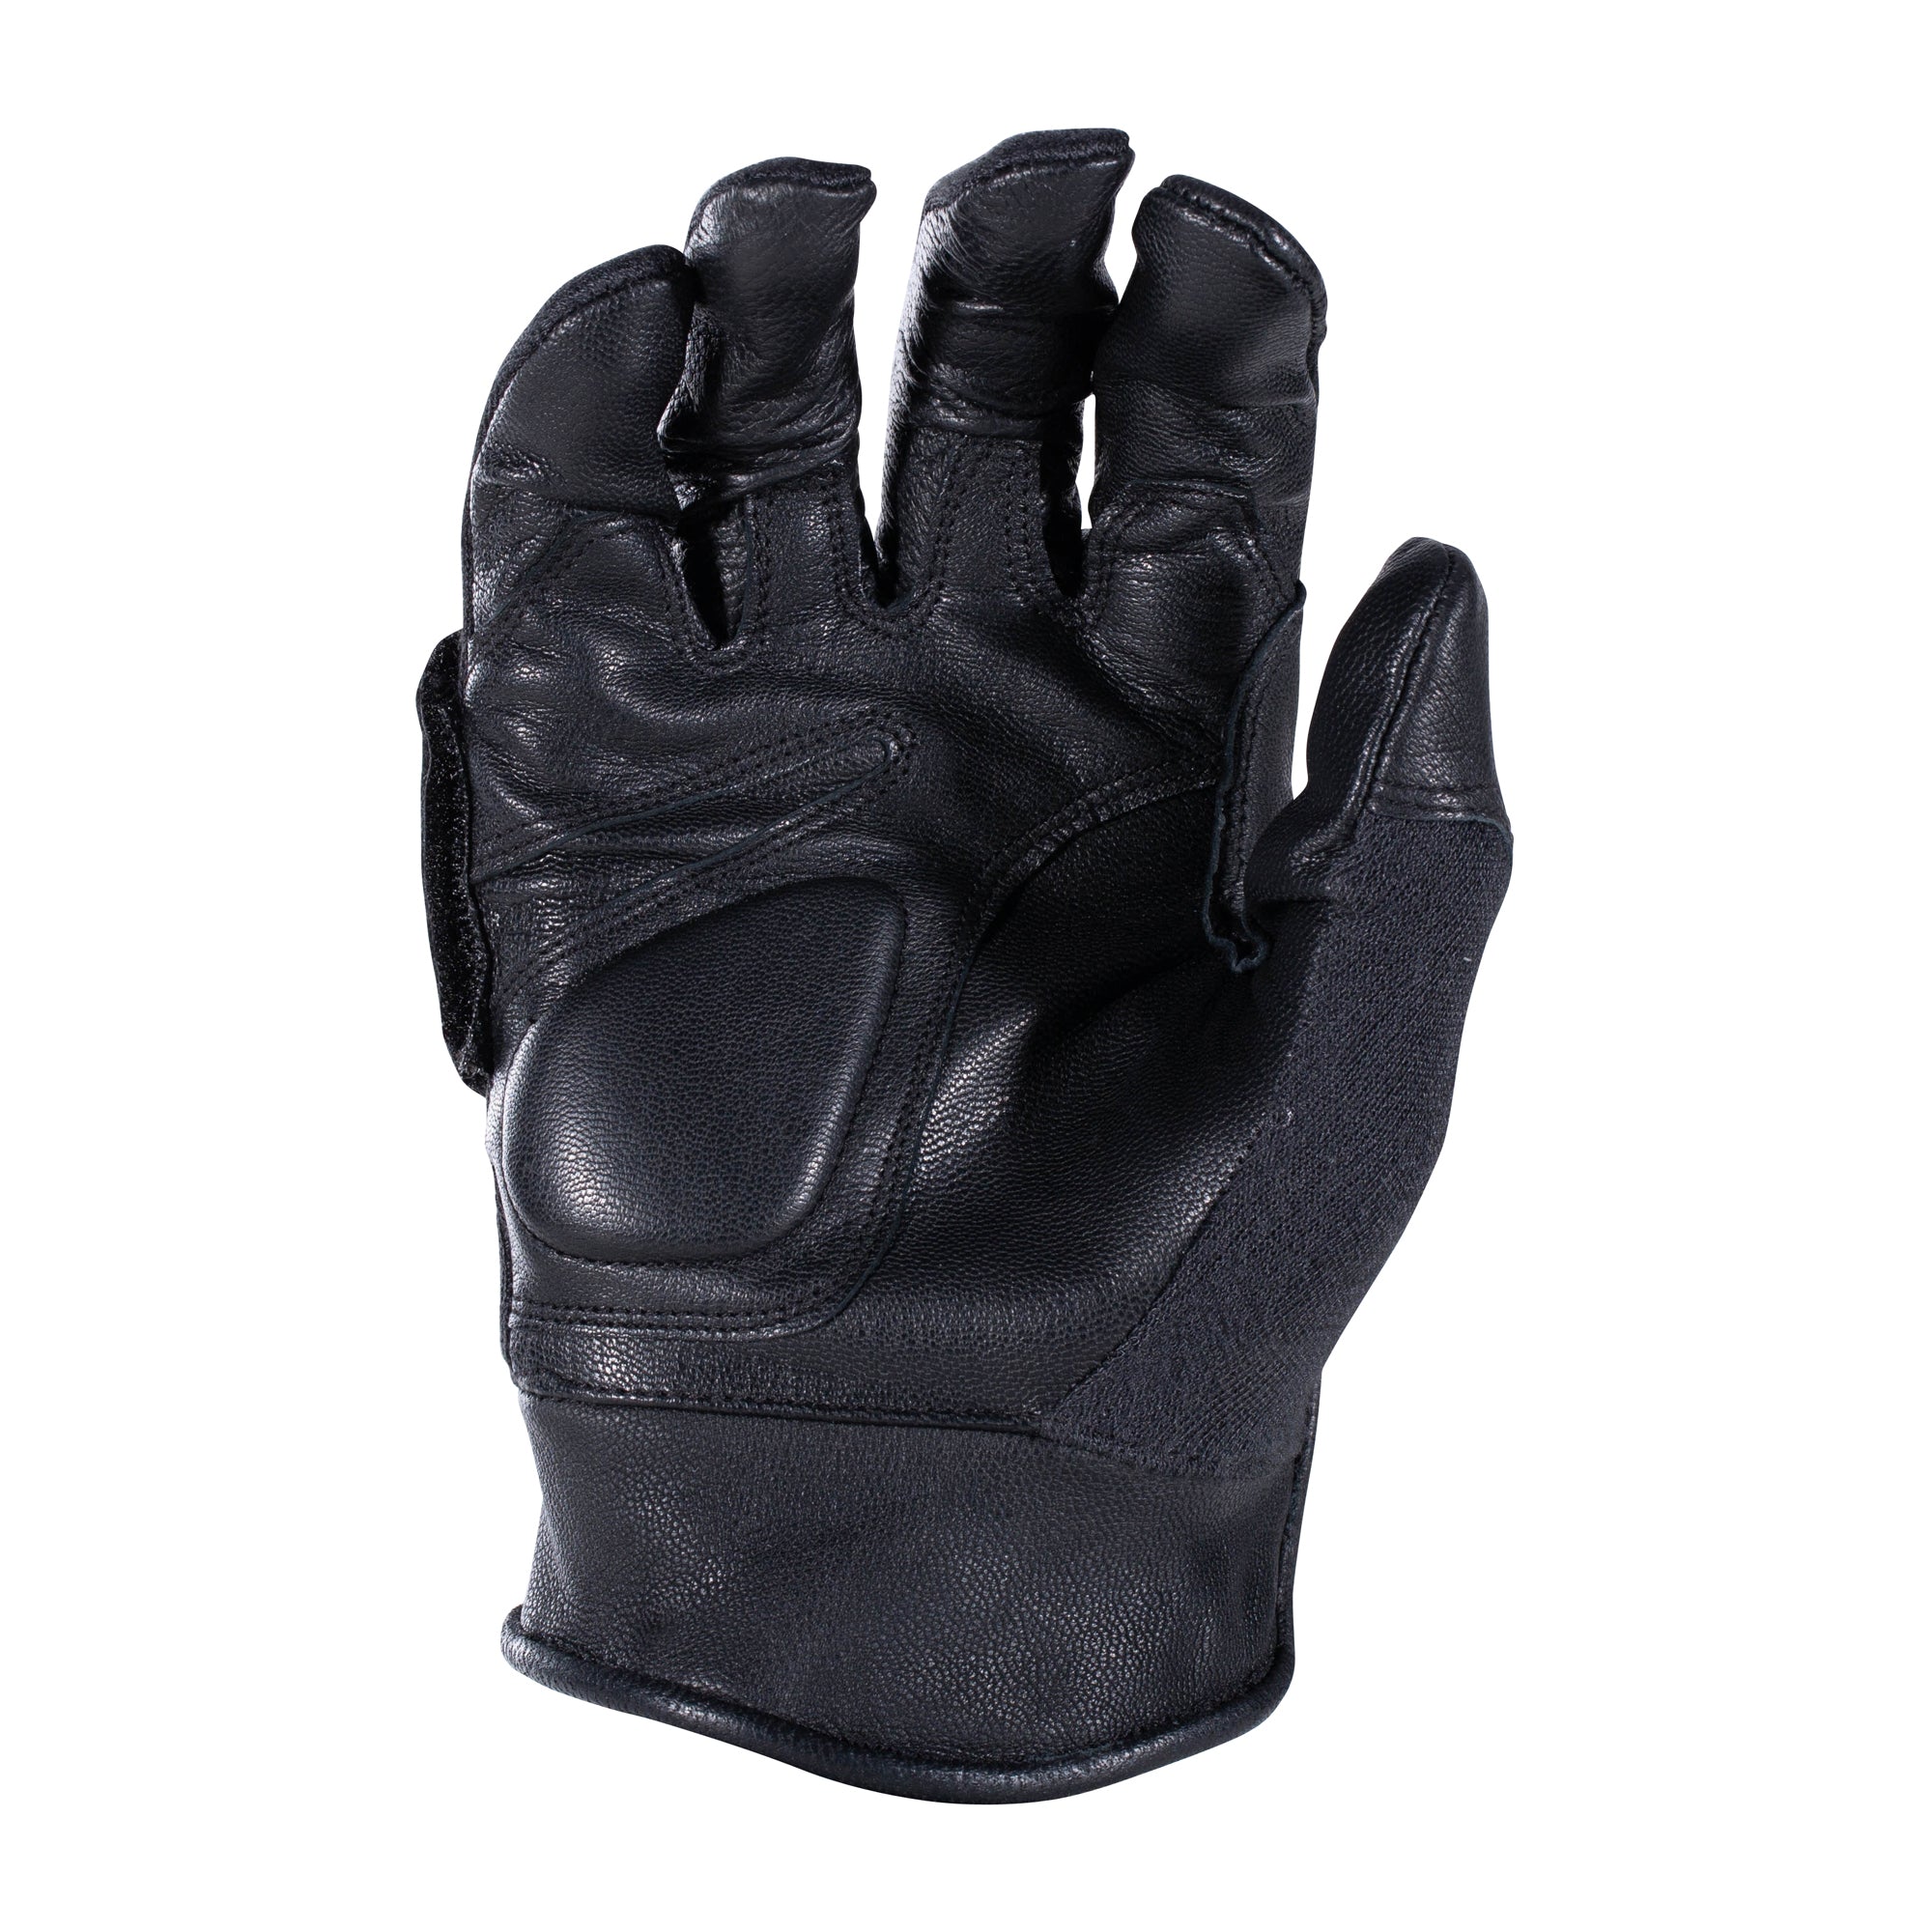 Handschuhe Tactical Gloves Leder Kevlar schwarz